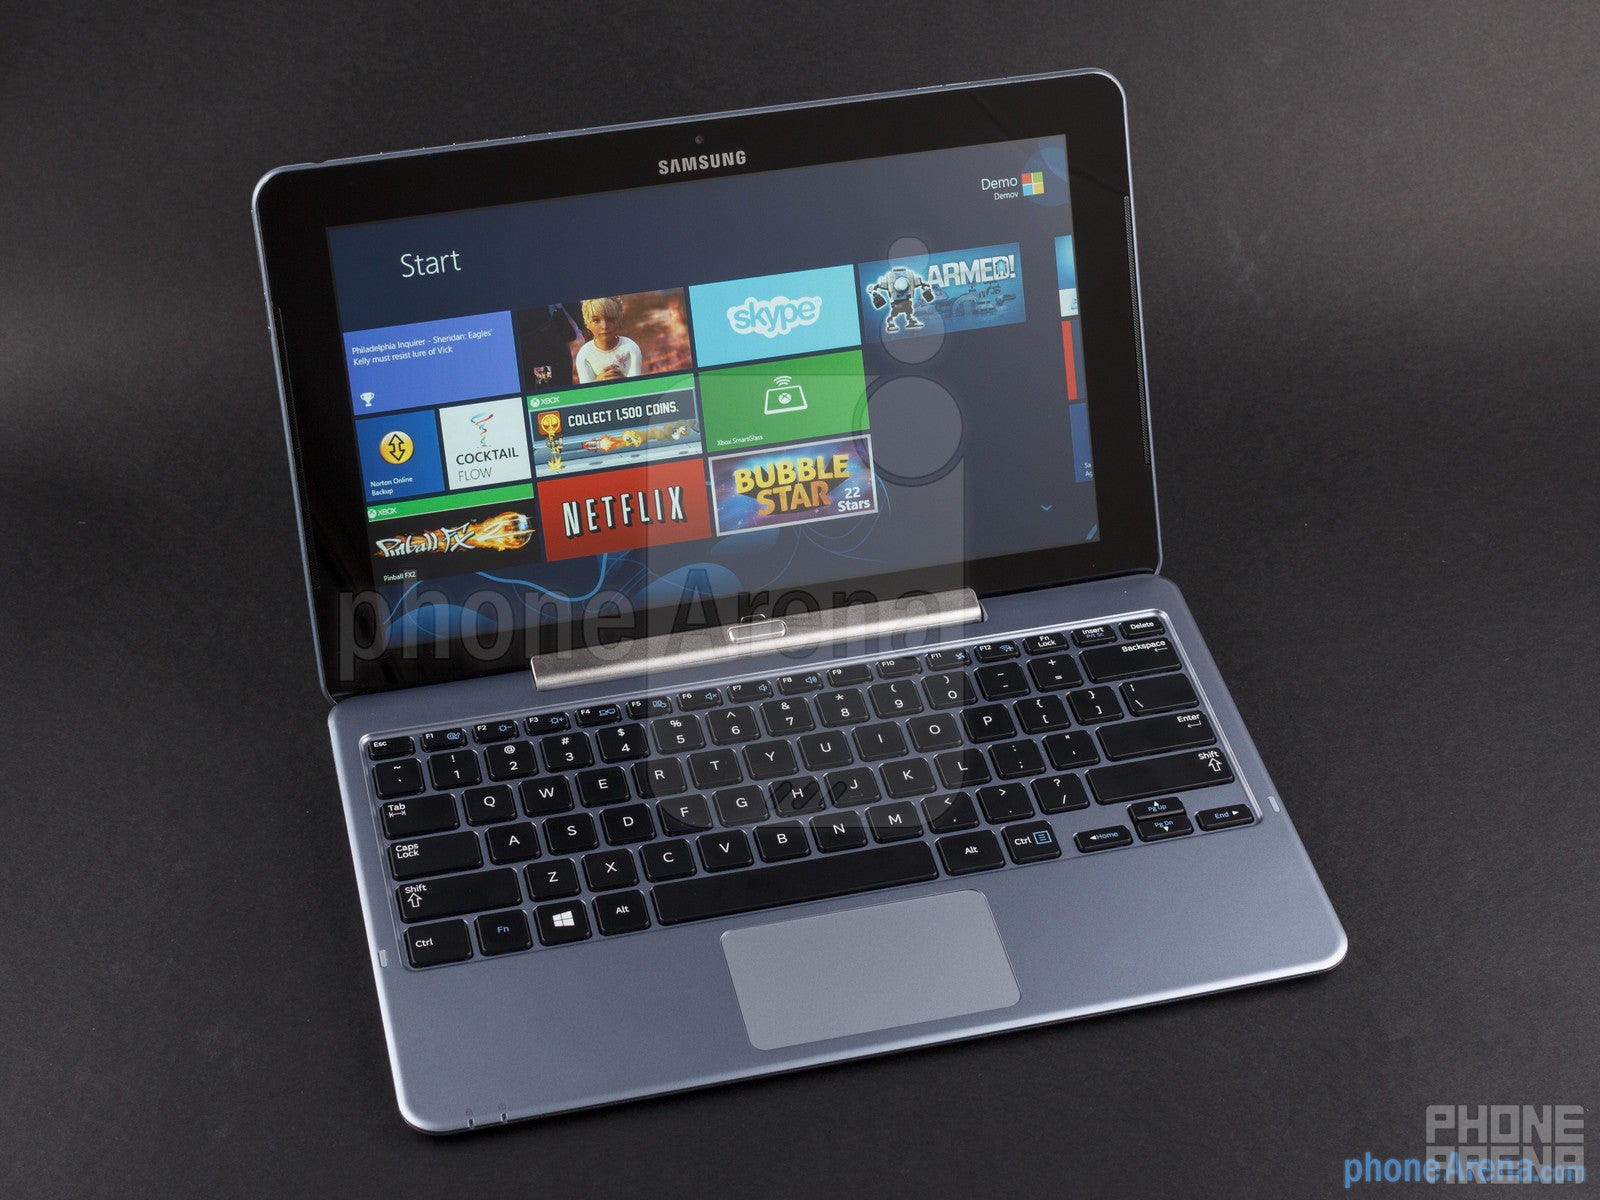 Samsung ATIV Smart PC Review